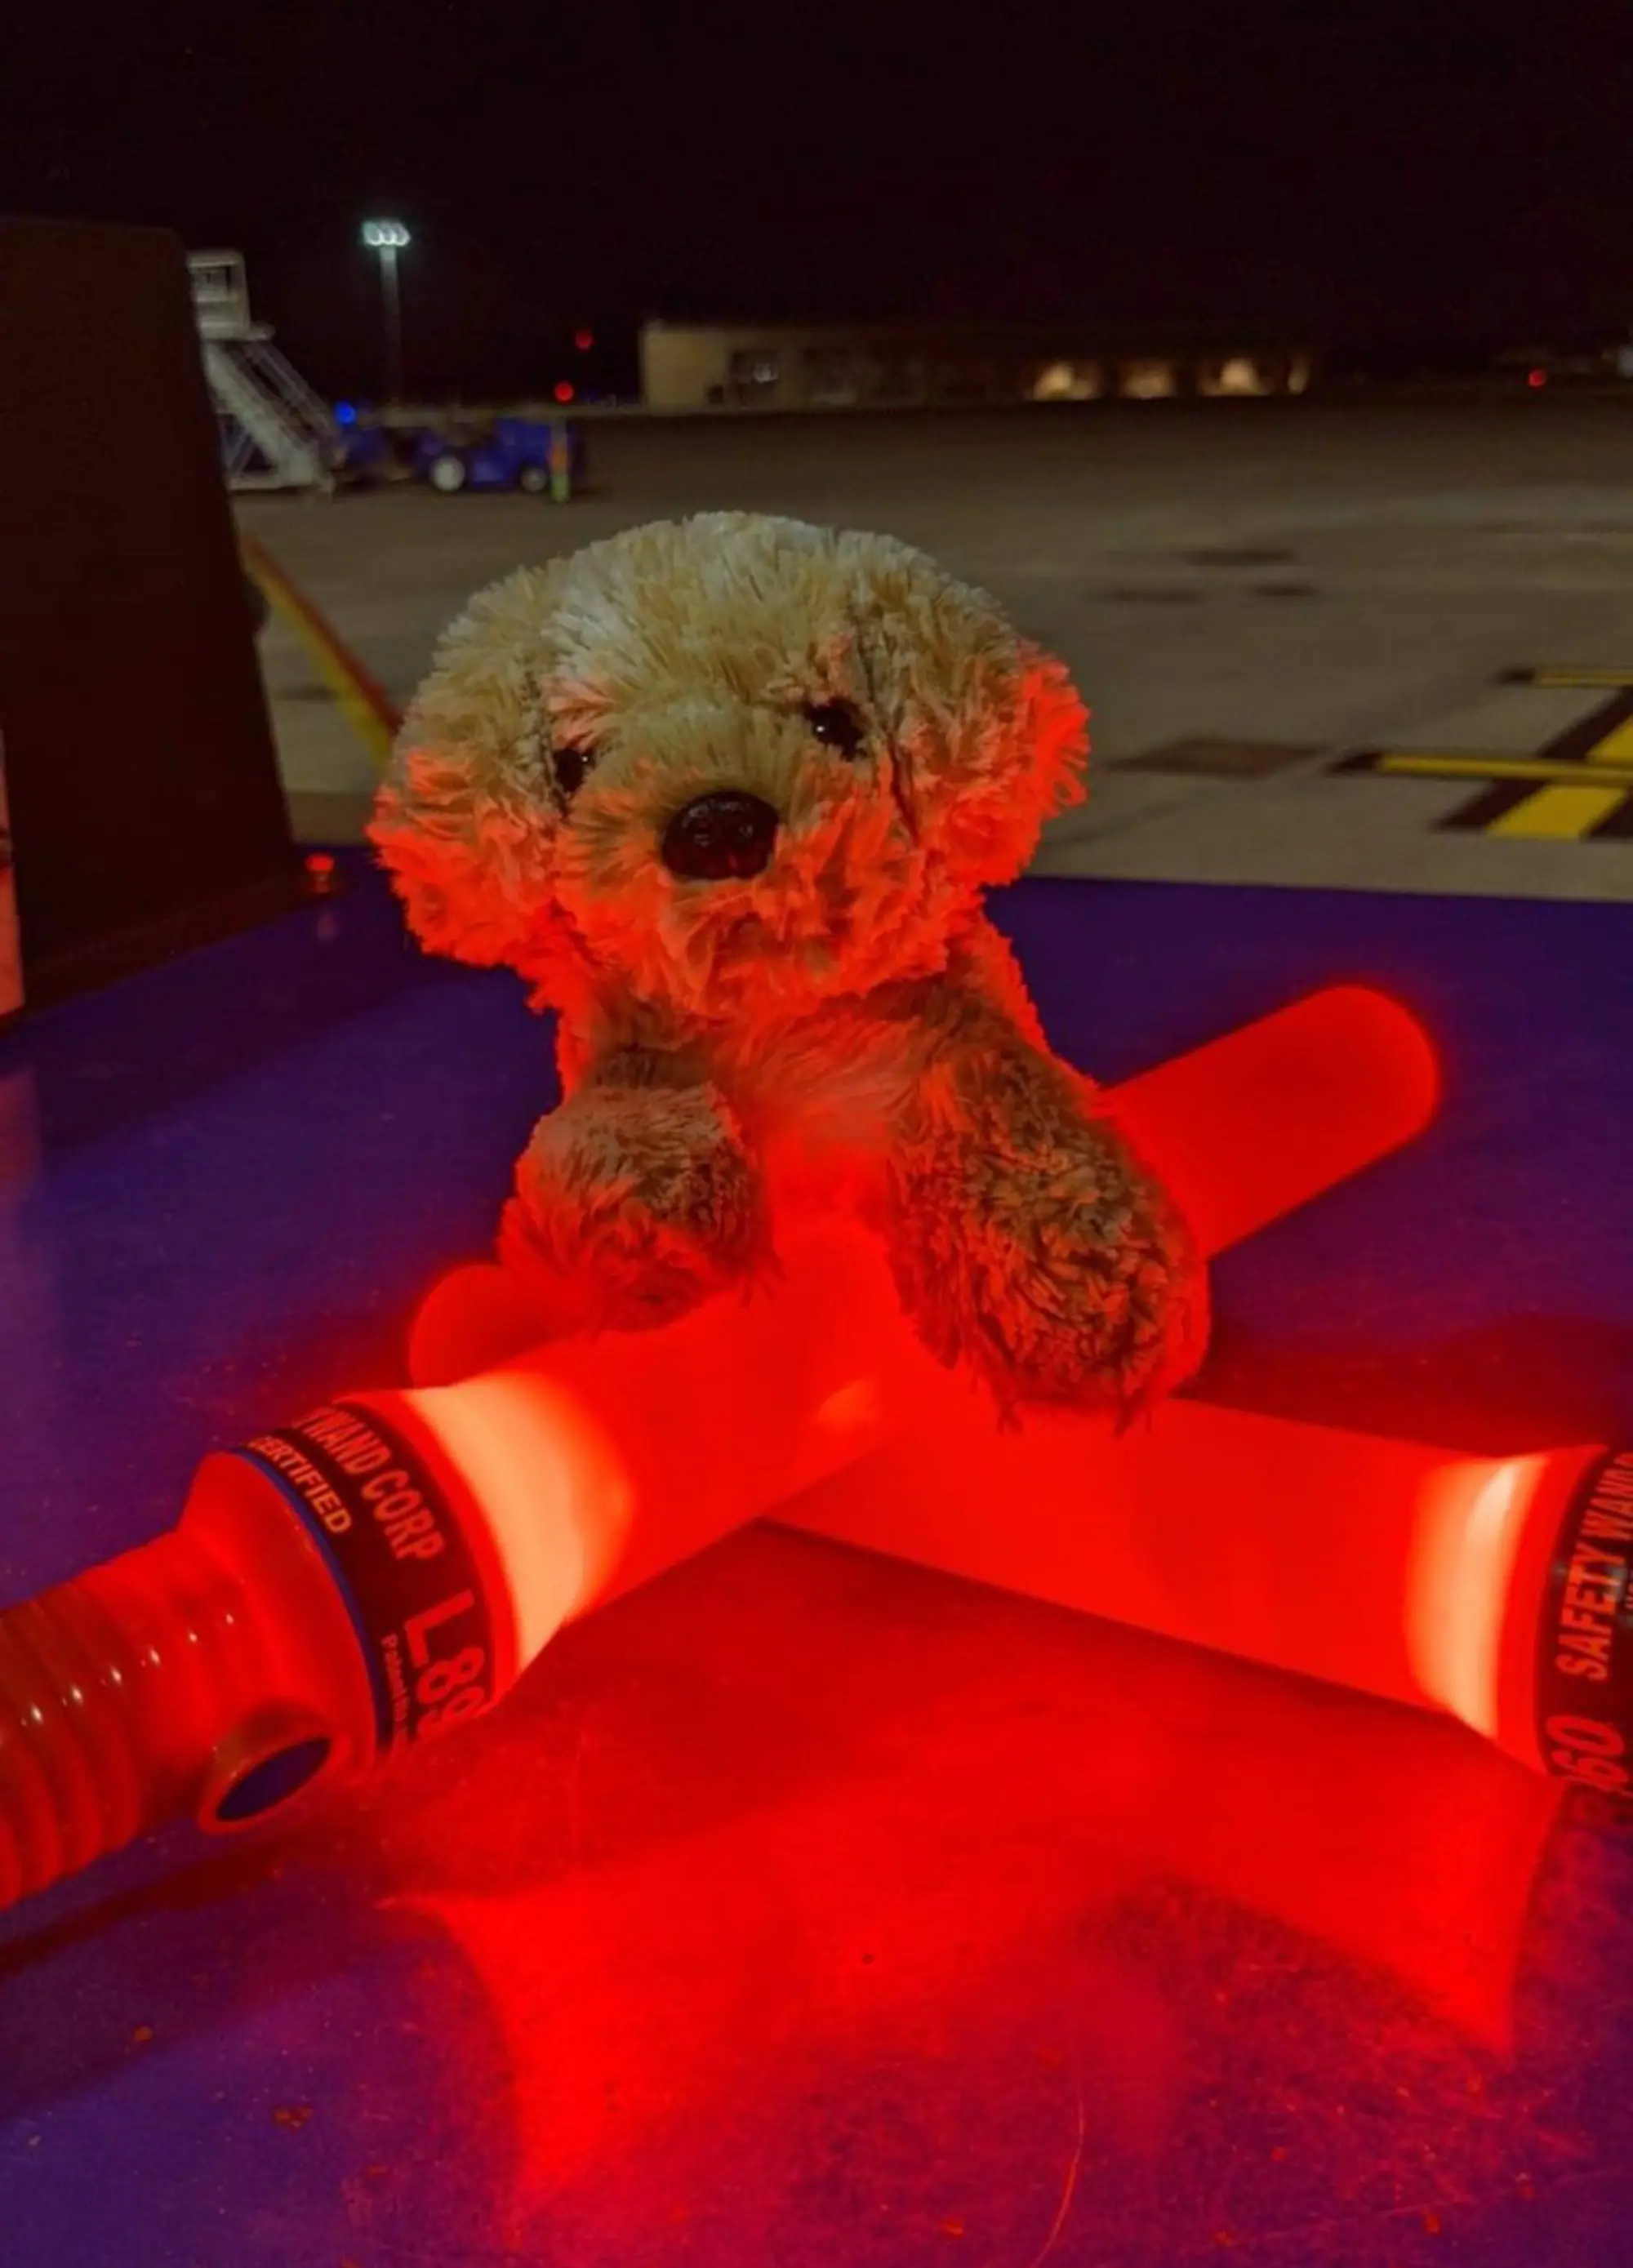 O vídeo com o cachorrinho de pelúcia rendeu várias criticas de consumidores insatisfeitos com os serviços. Foto: Reprodução/Southwest Airlines